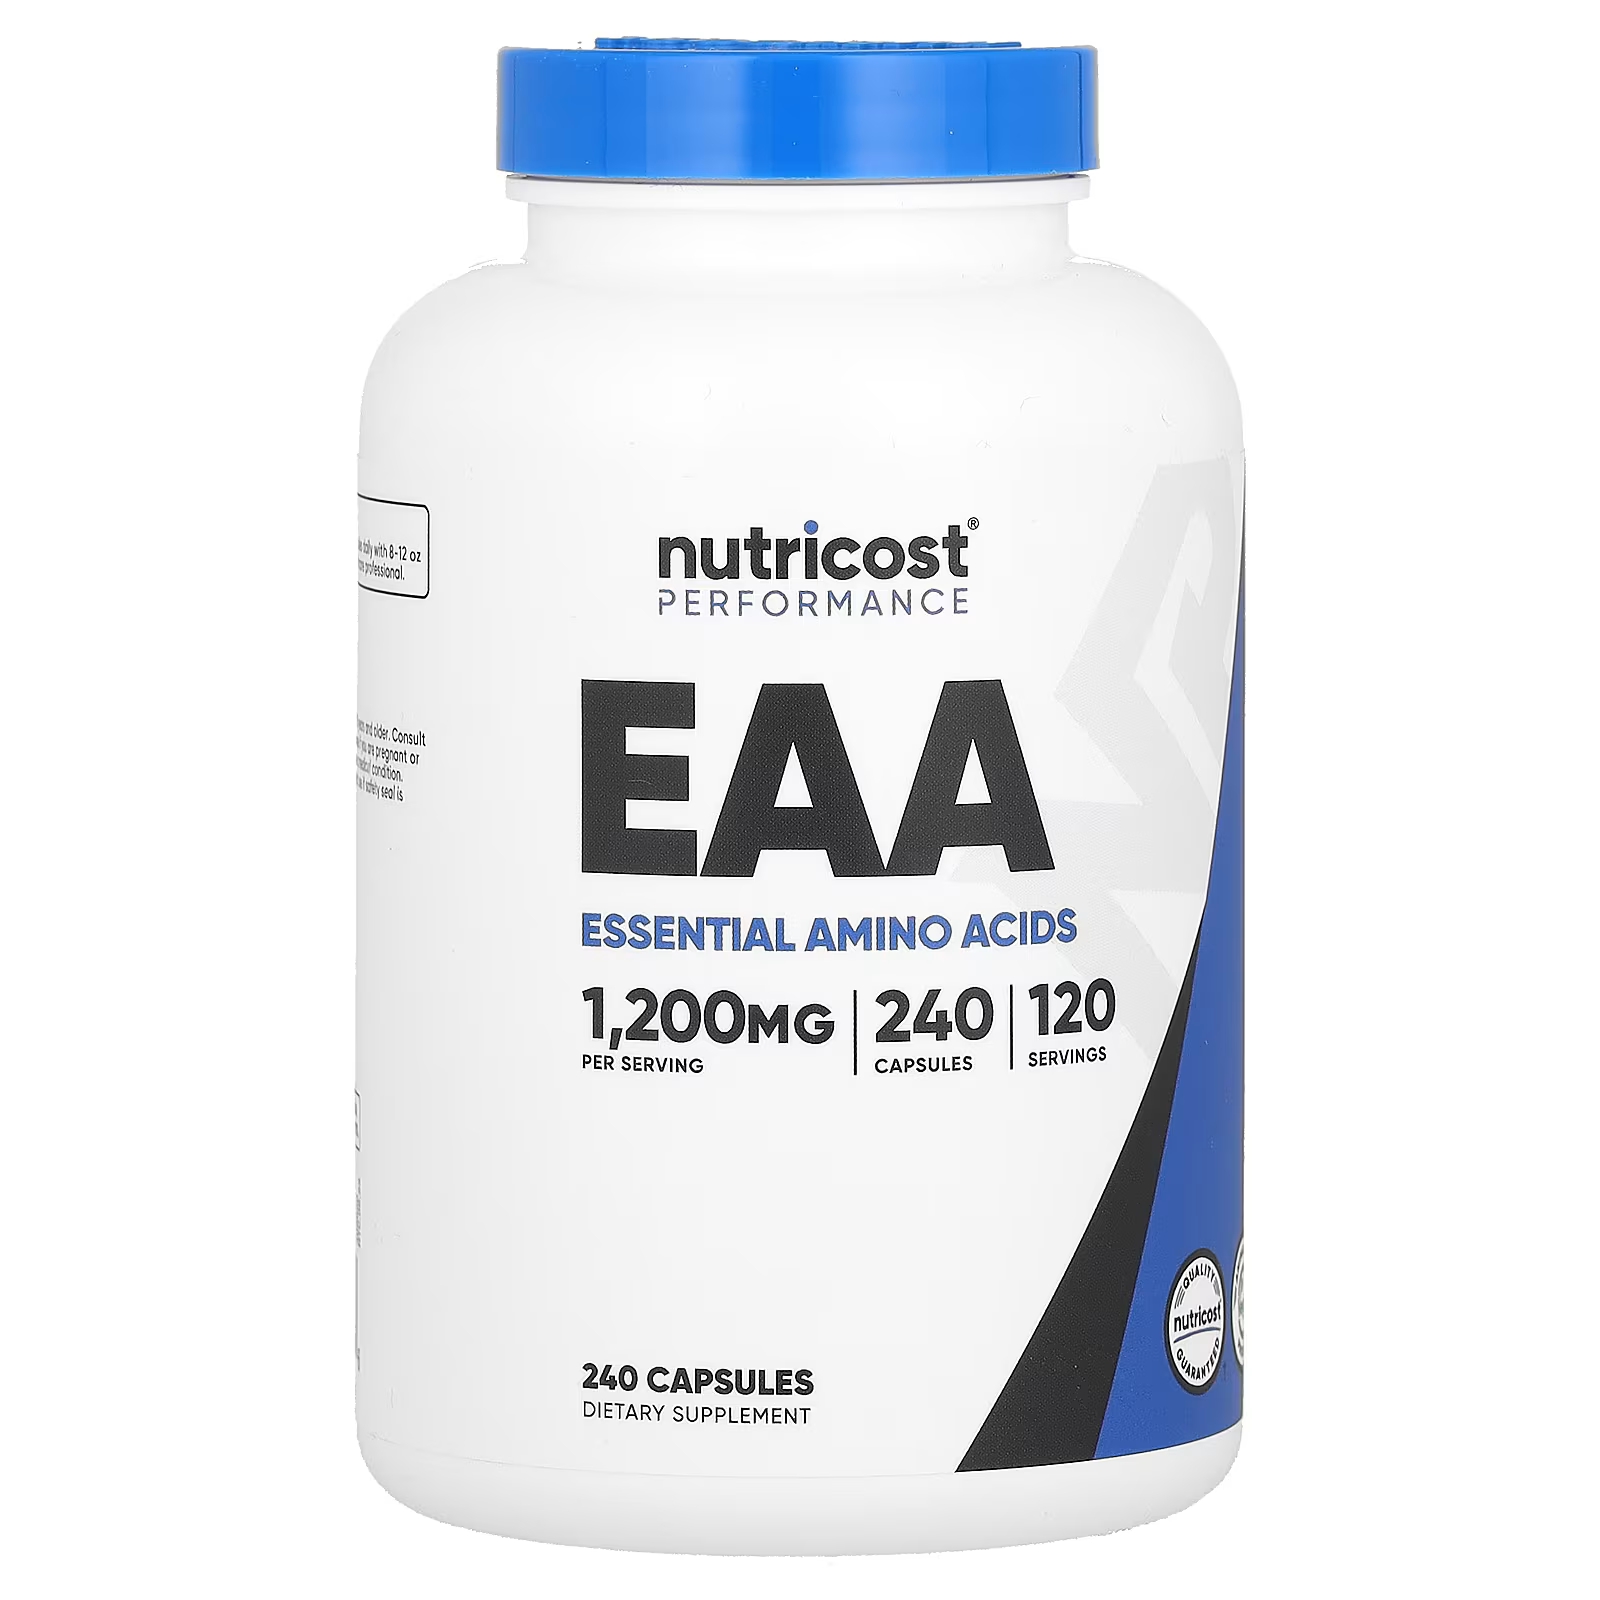 Пищевая добавка Nutricost Performance EAA 1200 мг, 240 капсул (600 мг на капсулу) пищевая добавка nutricost performance eaa 249 г